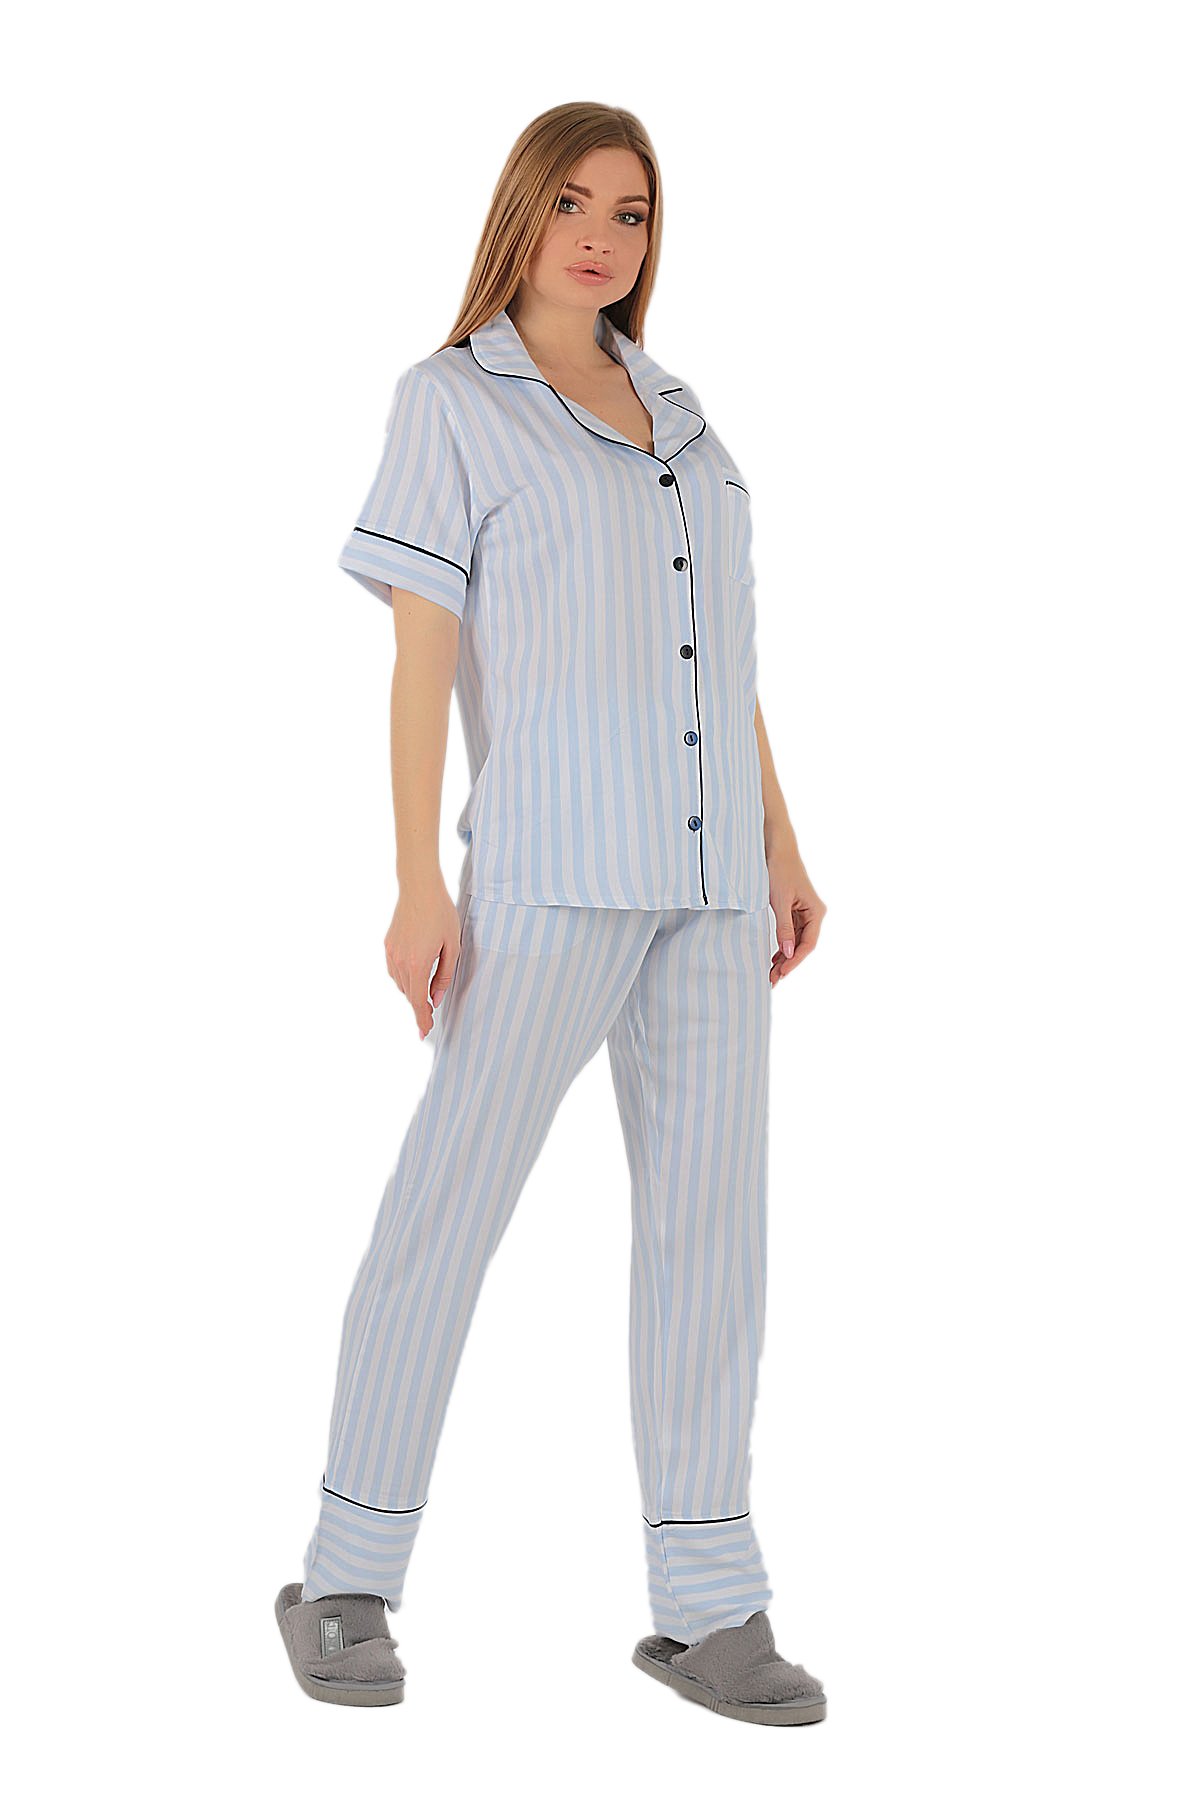 Kadın Pijama Takımı Çizgili Mavi-Beyaz | Penyelux Kadın İç Giyim